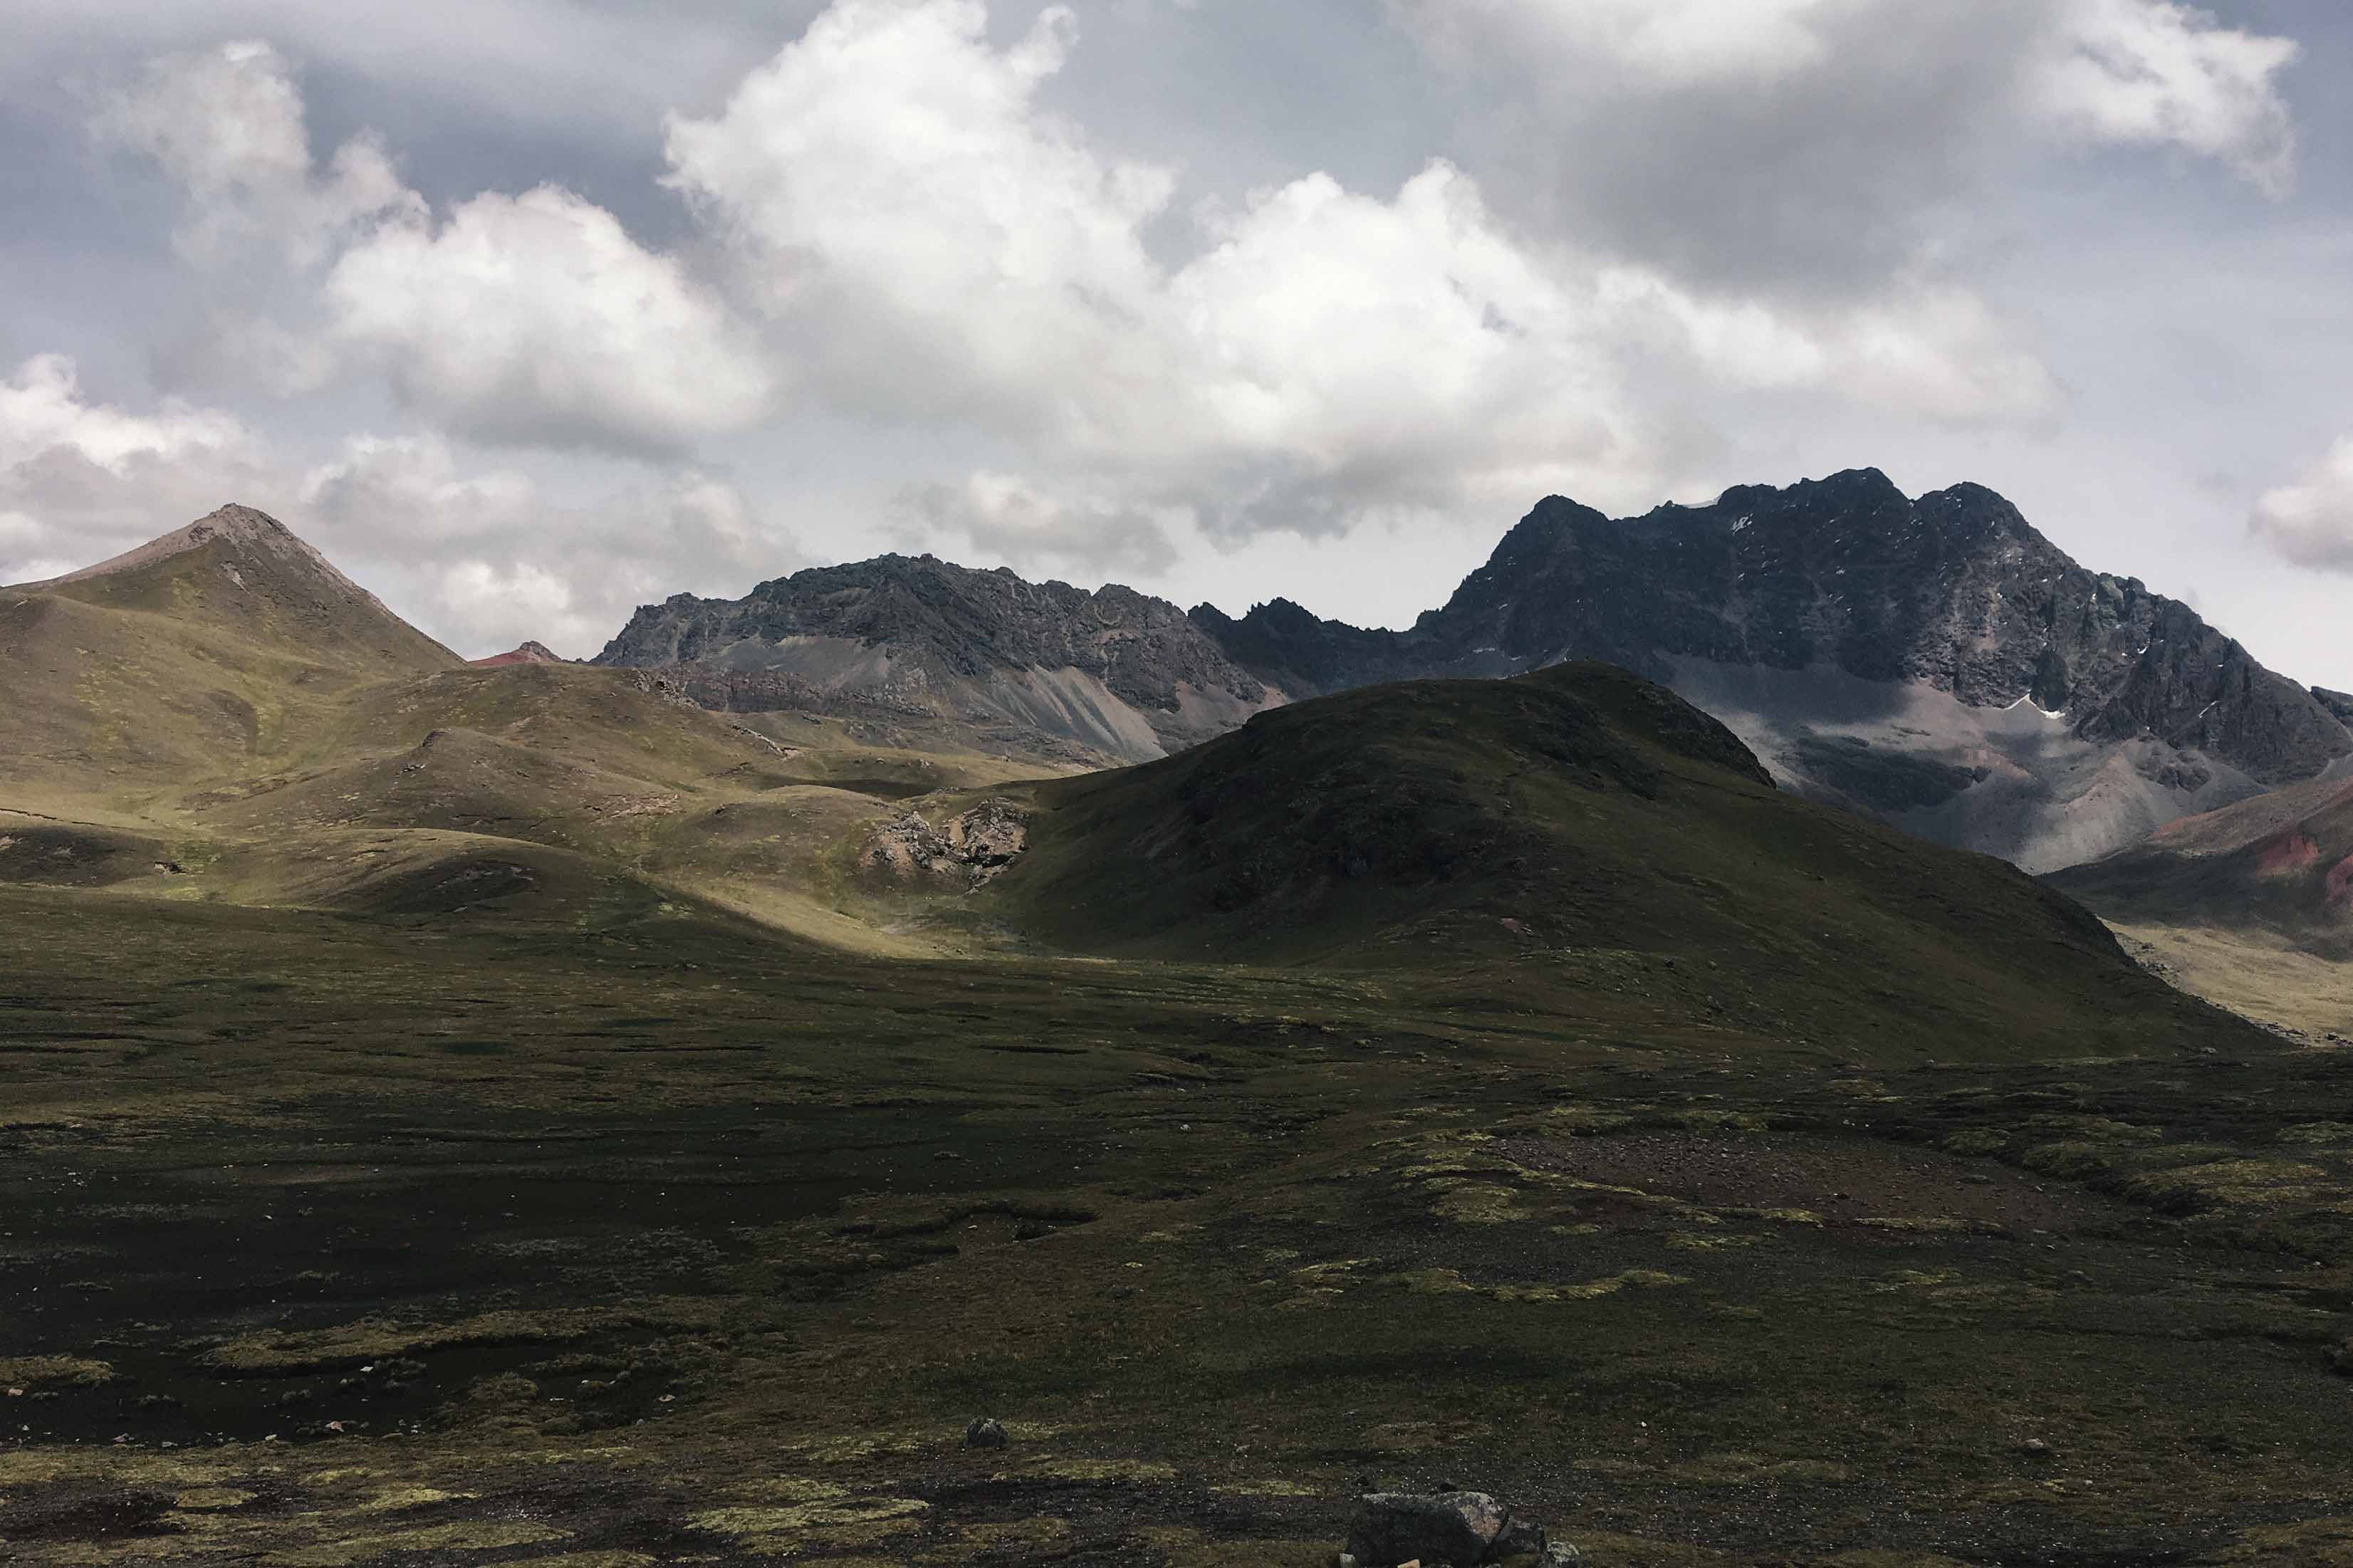 Dovolenka v Peru: Kam do hôr?